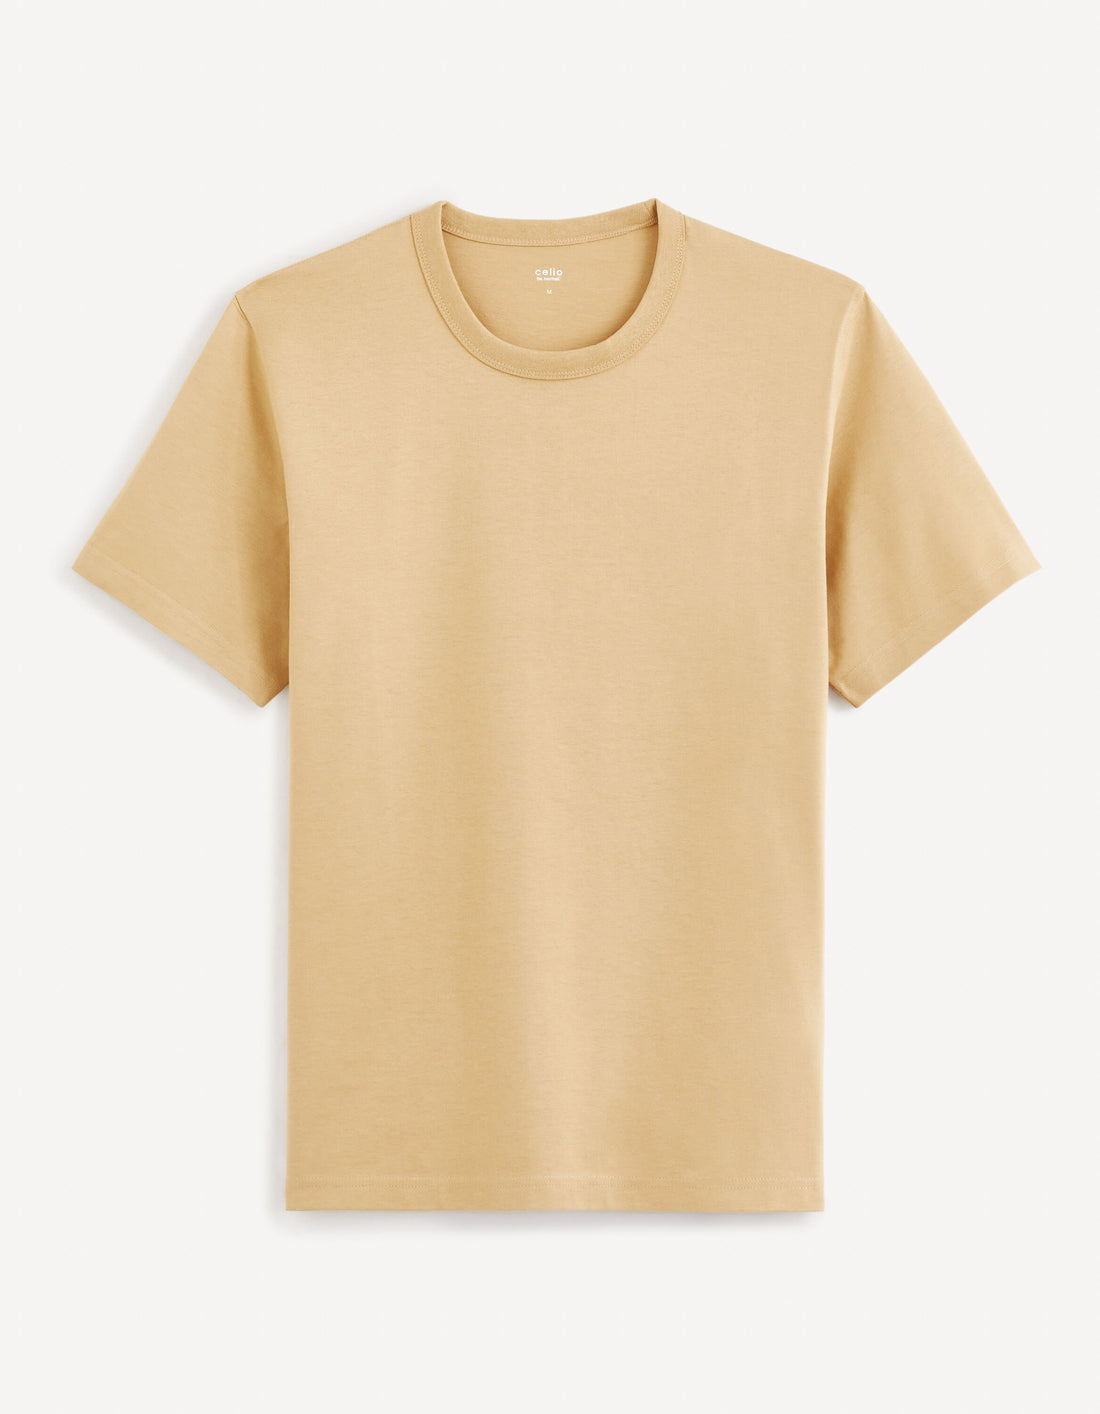 100% Cotton Boxy T-Shirt_TEBOX_CAFFE LATTE_02